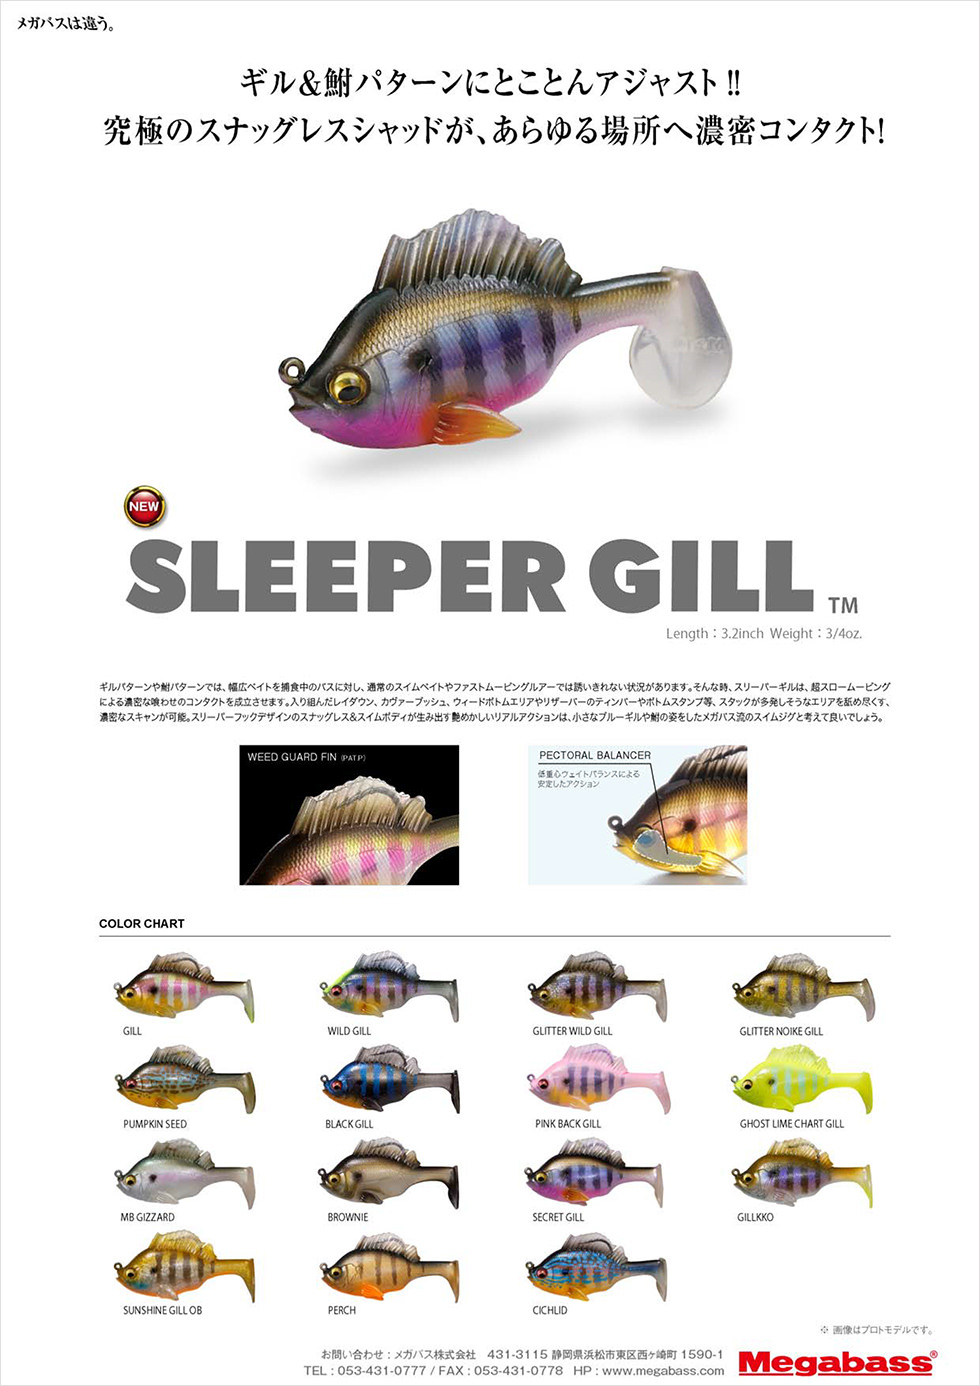 SLEEPER-GILL